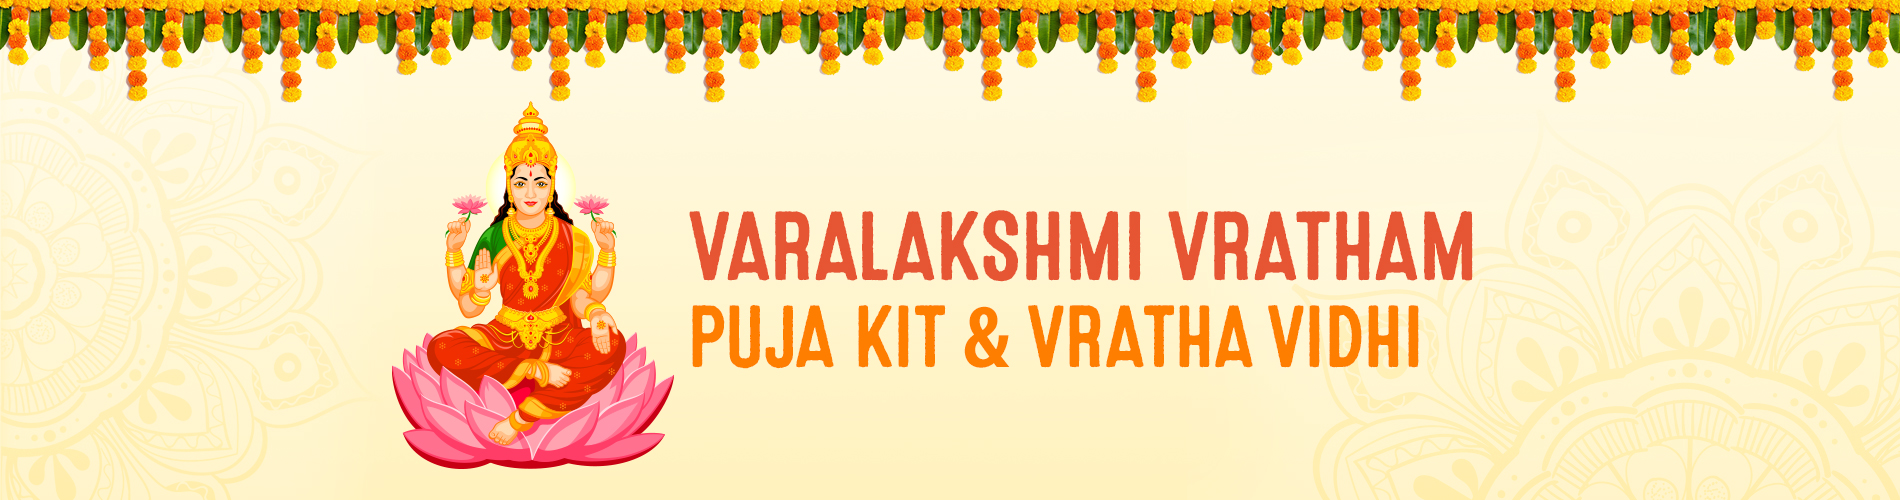 Varalakshmi Vratham Puja kit & Vratha vidhi